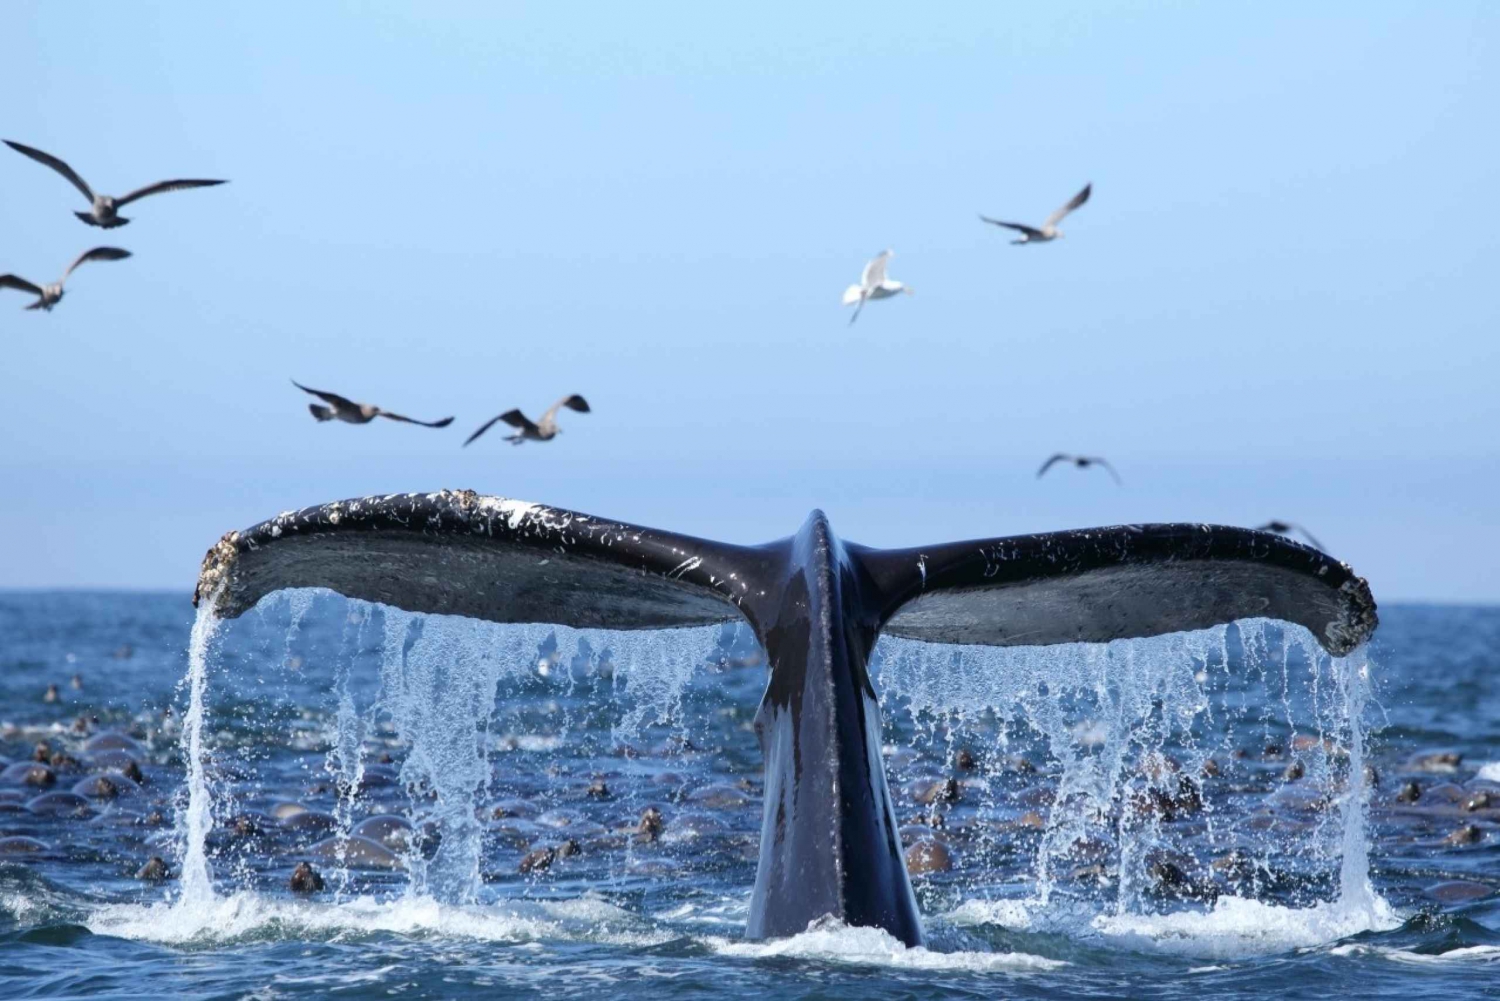 Oahu: Krydstogt med hvalsafari i Honolulu